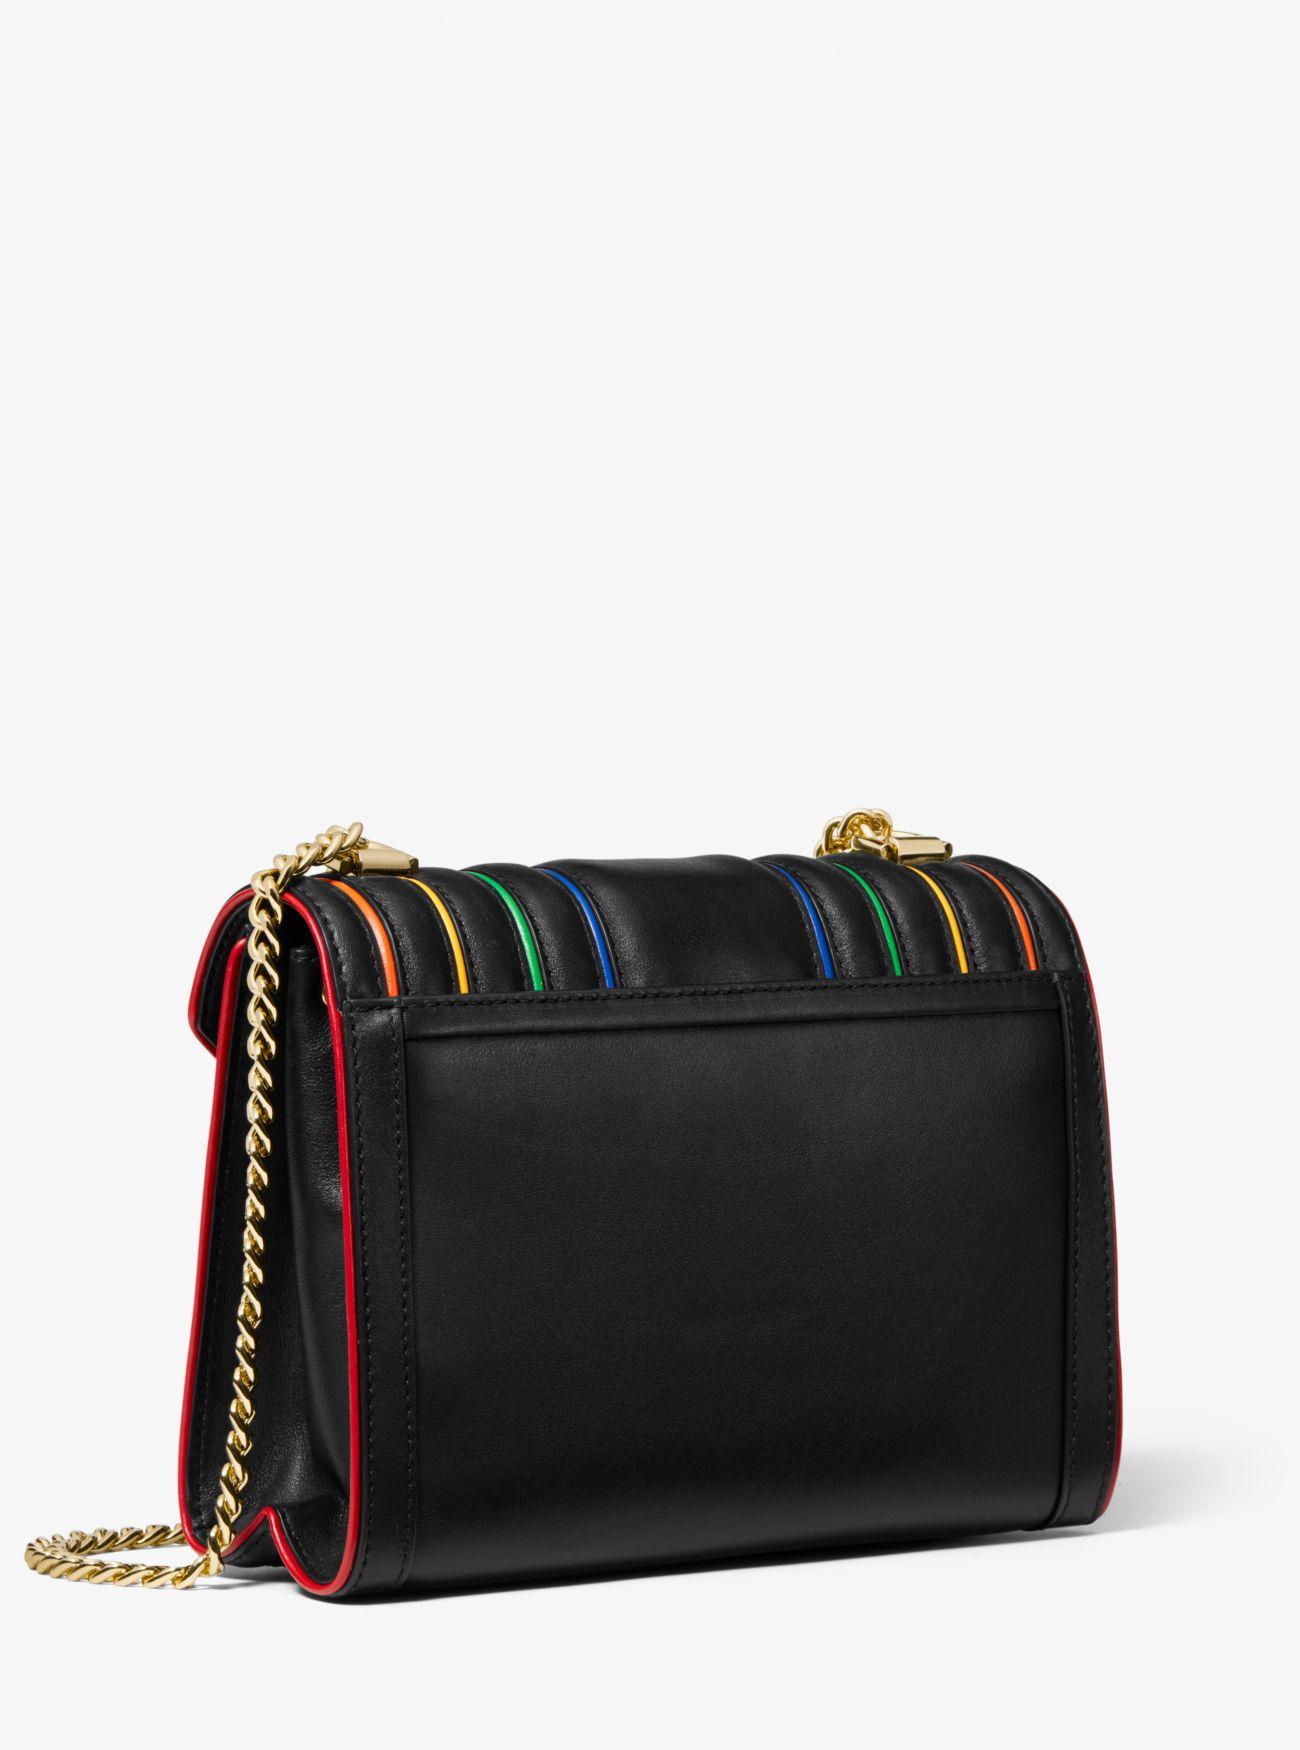 michael kors black rainbow purse